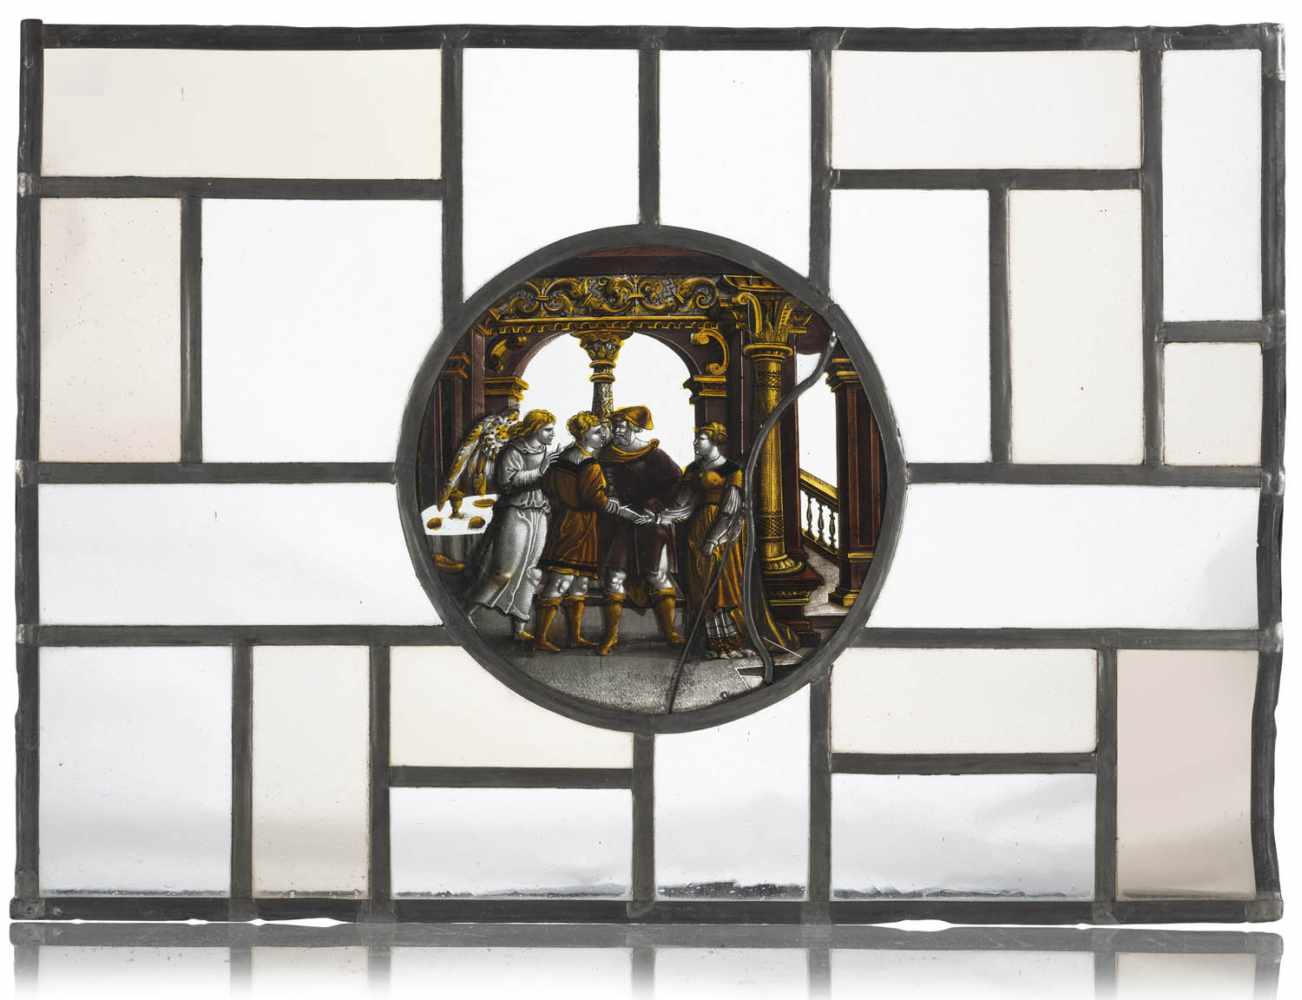 Bleiglasfenster17. Jahrhundert und späterD. 19/37x51 cmZentrale, runde Scheibe mit der Darstellung